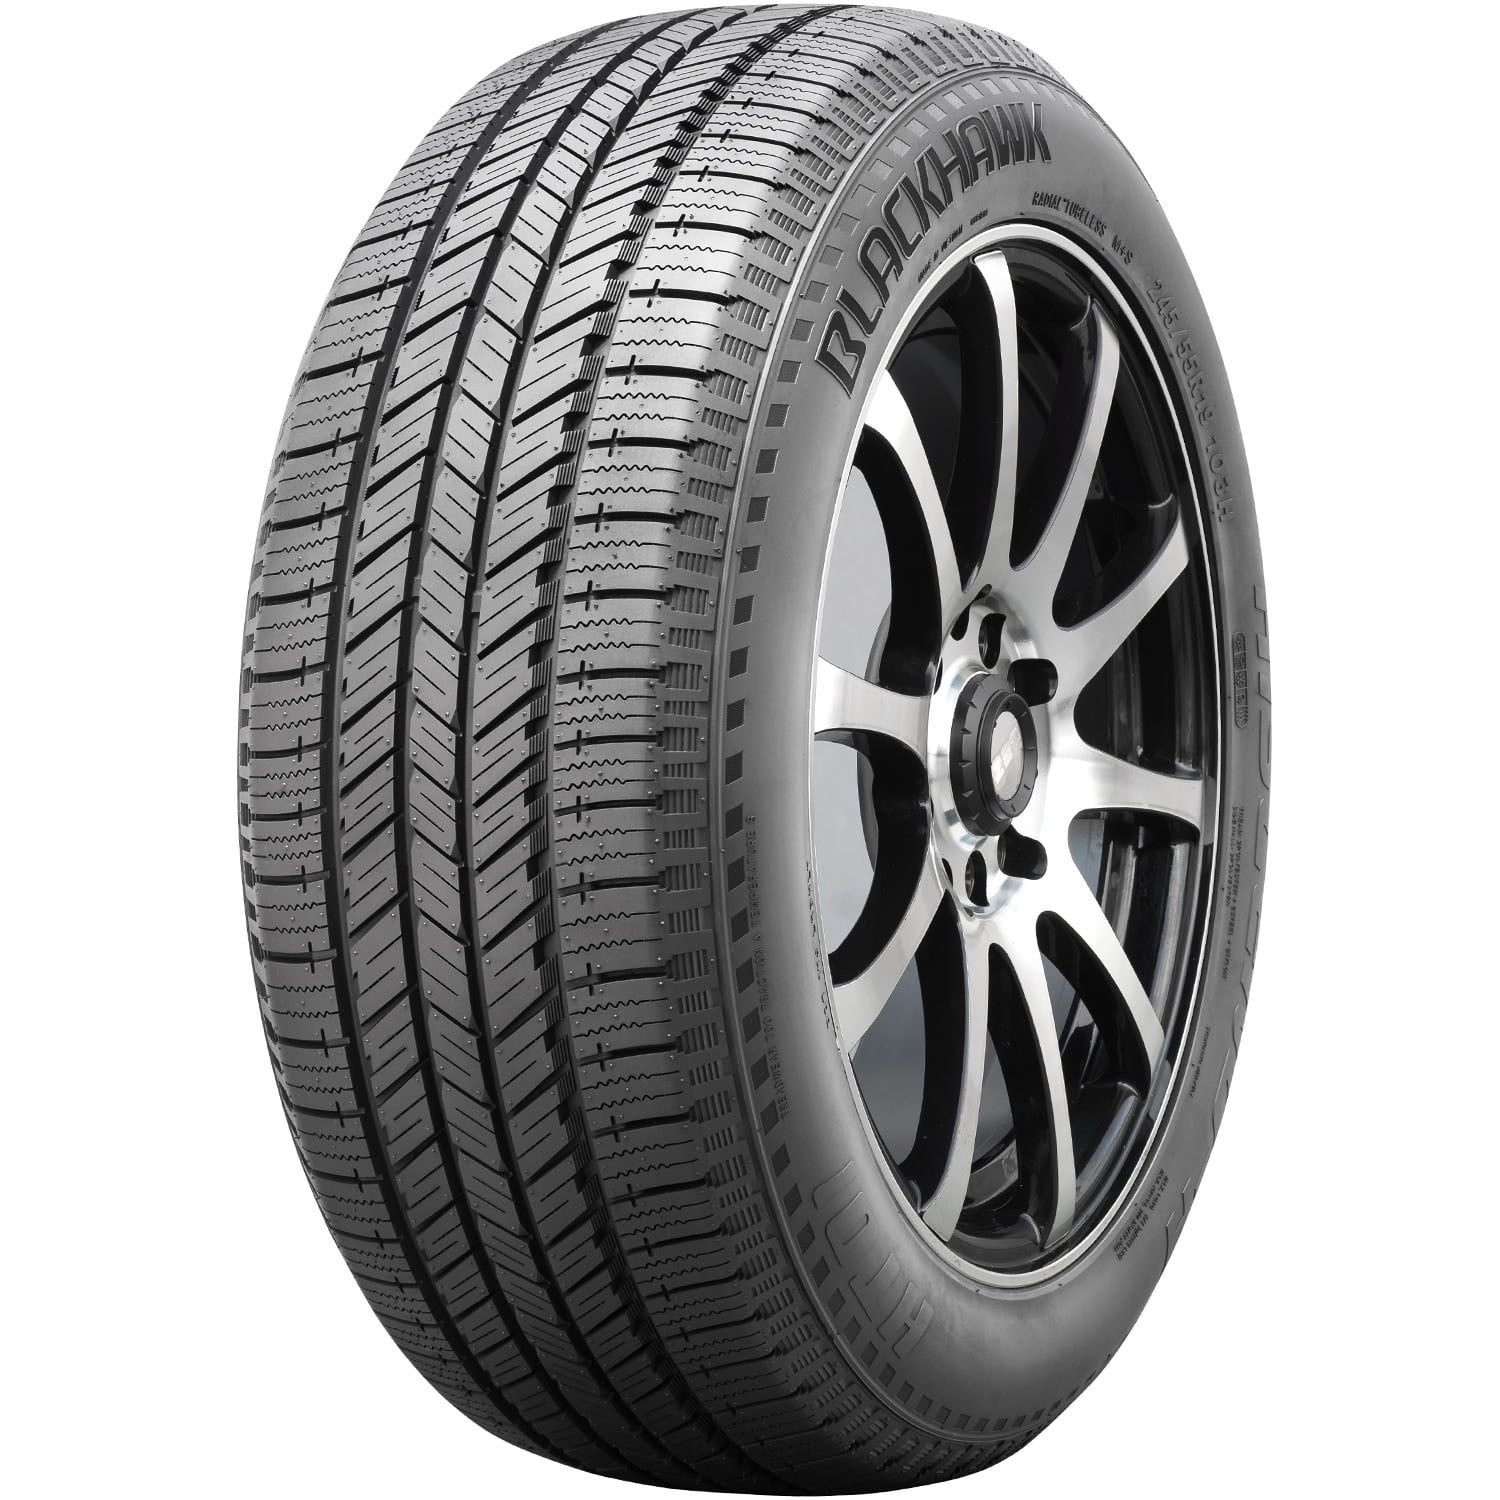 CST Premium TB96041000 Tires CSTP E-series Reach 700x40 Bk Wire for sale online 